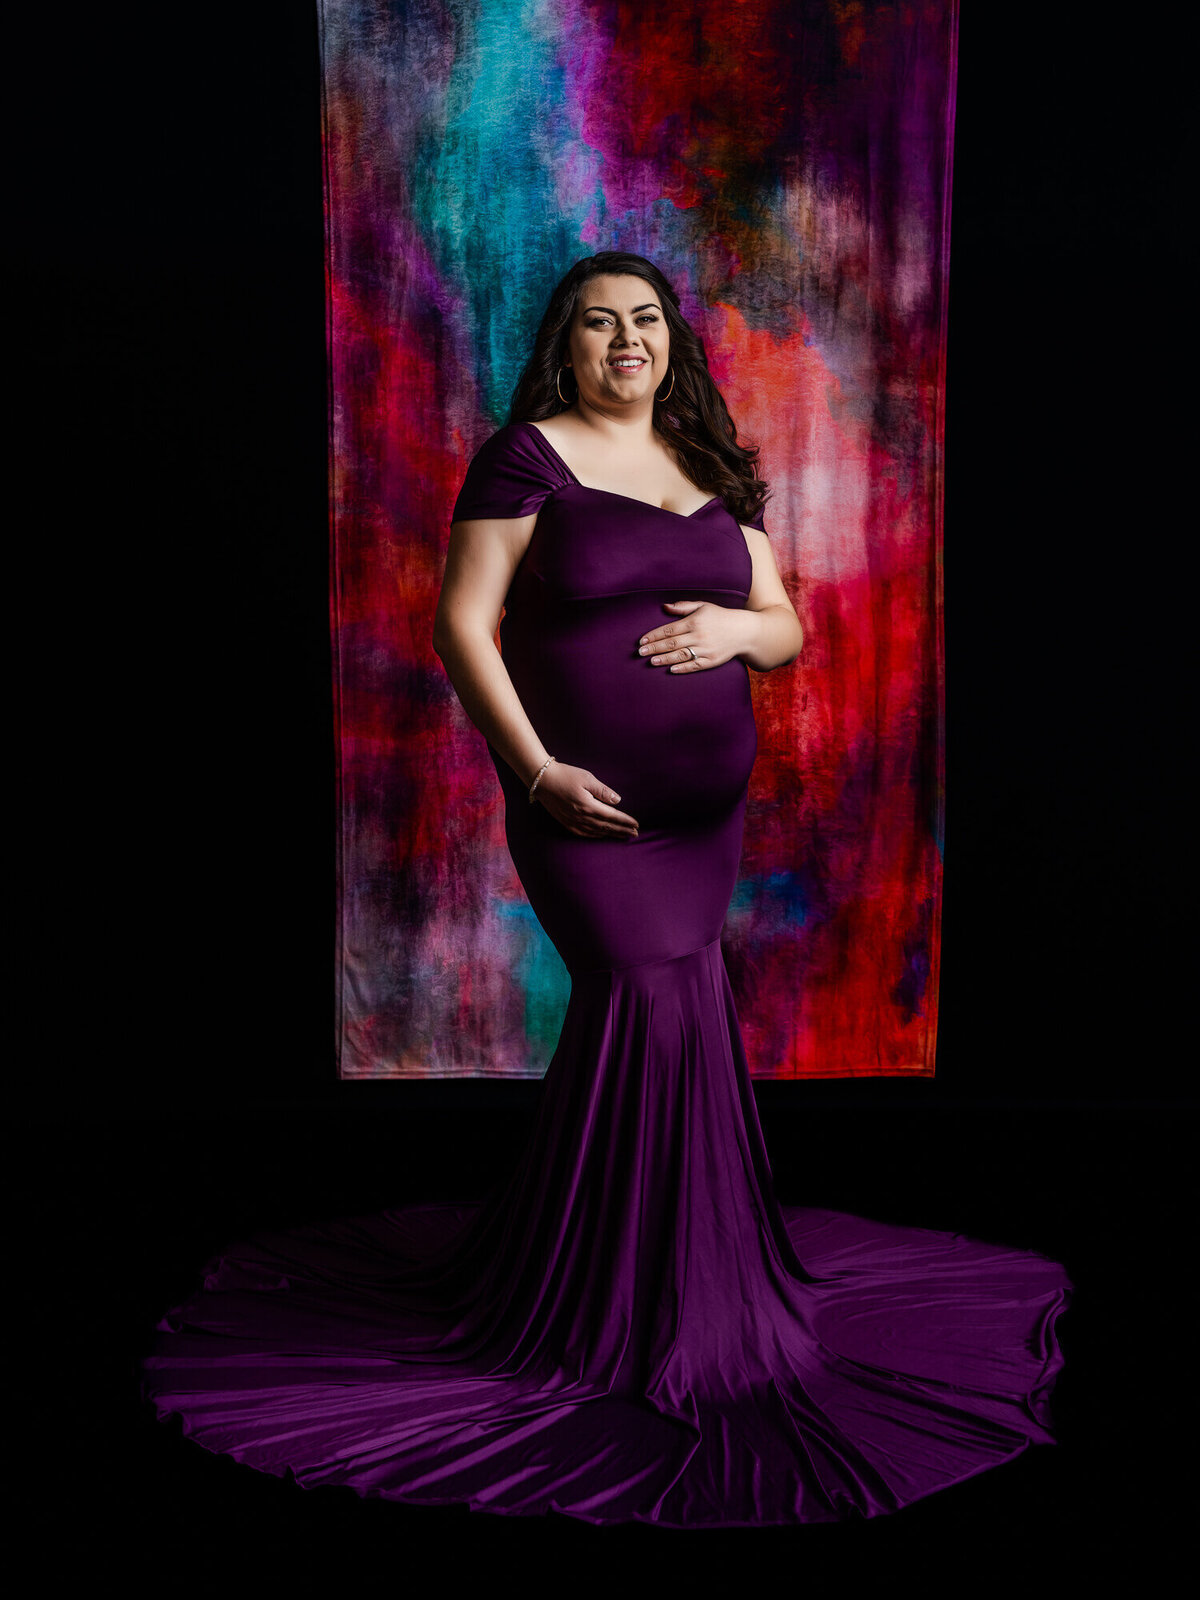 prescott-az-maternity-photographer-264